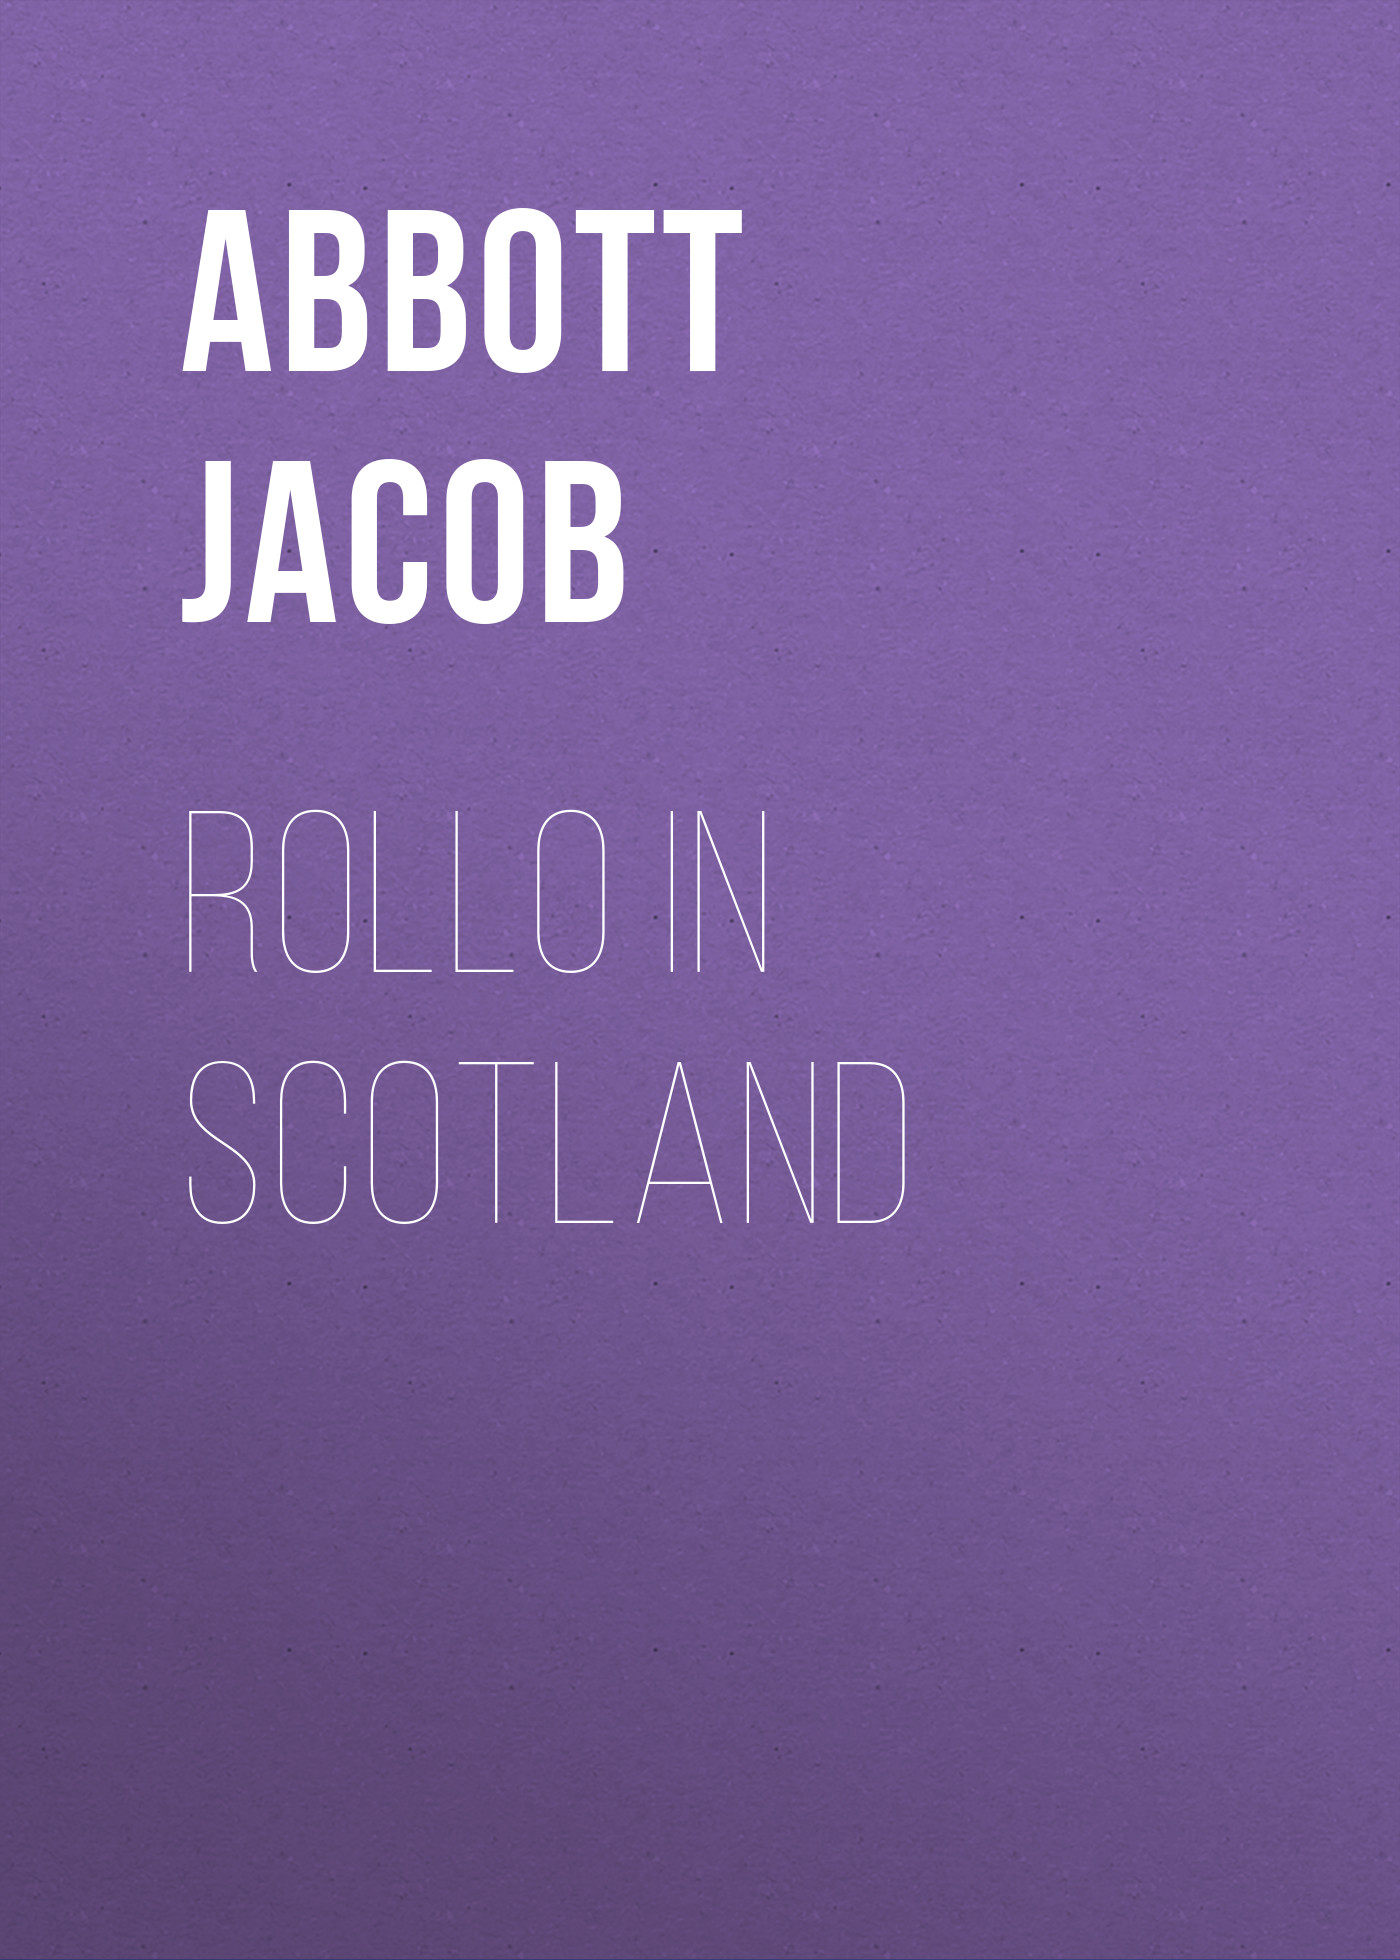 Книга Rollo in Scotland из серии , созданная Jacob Abbott, может относится к жанру Зарубежные детские книги, Литература 19 века, Зарубежная старинная литература, Зарубежная классика. Стоимость электронной книги Rollo in Scotland с идентификатором 36364926 составляет 0 руб.